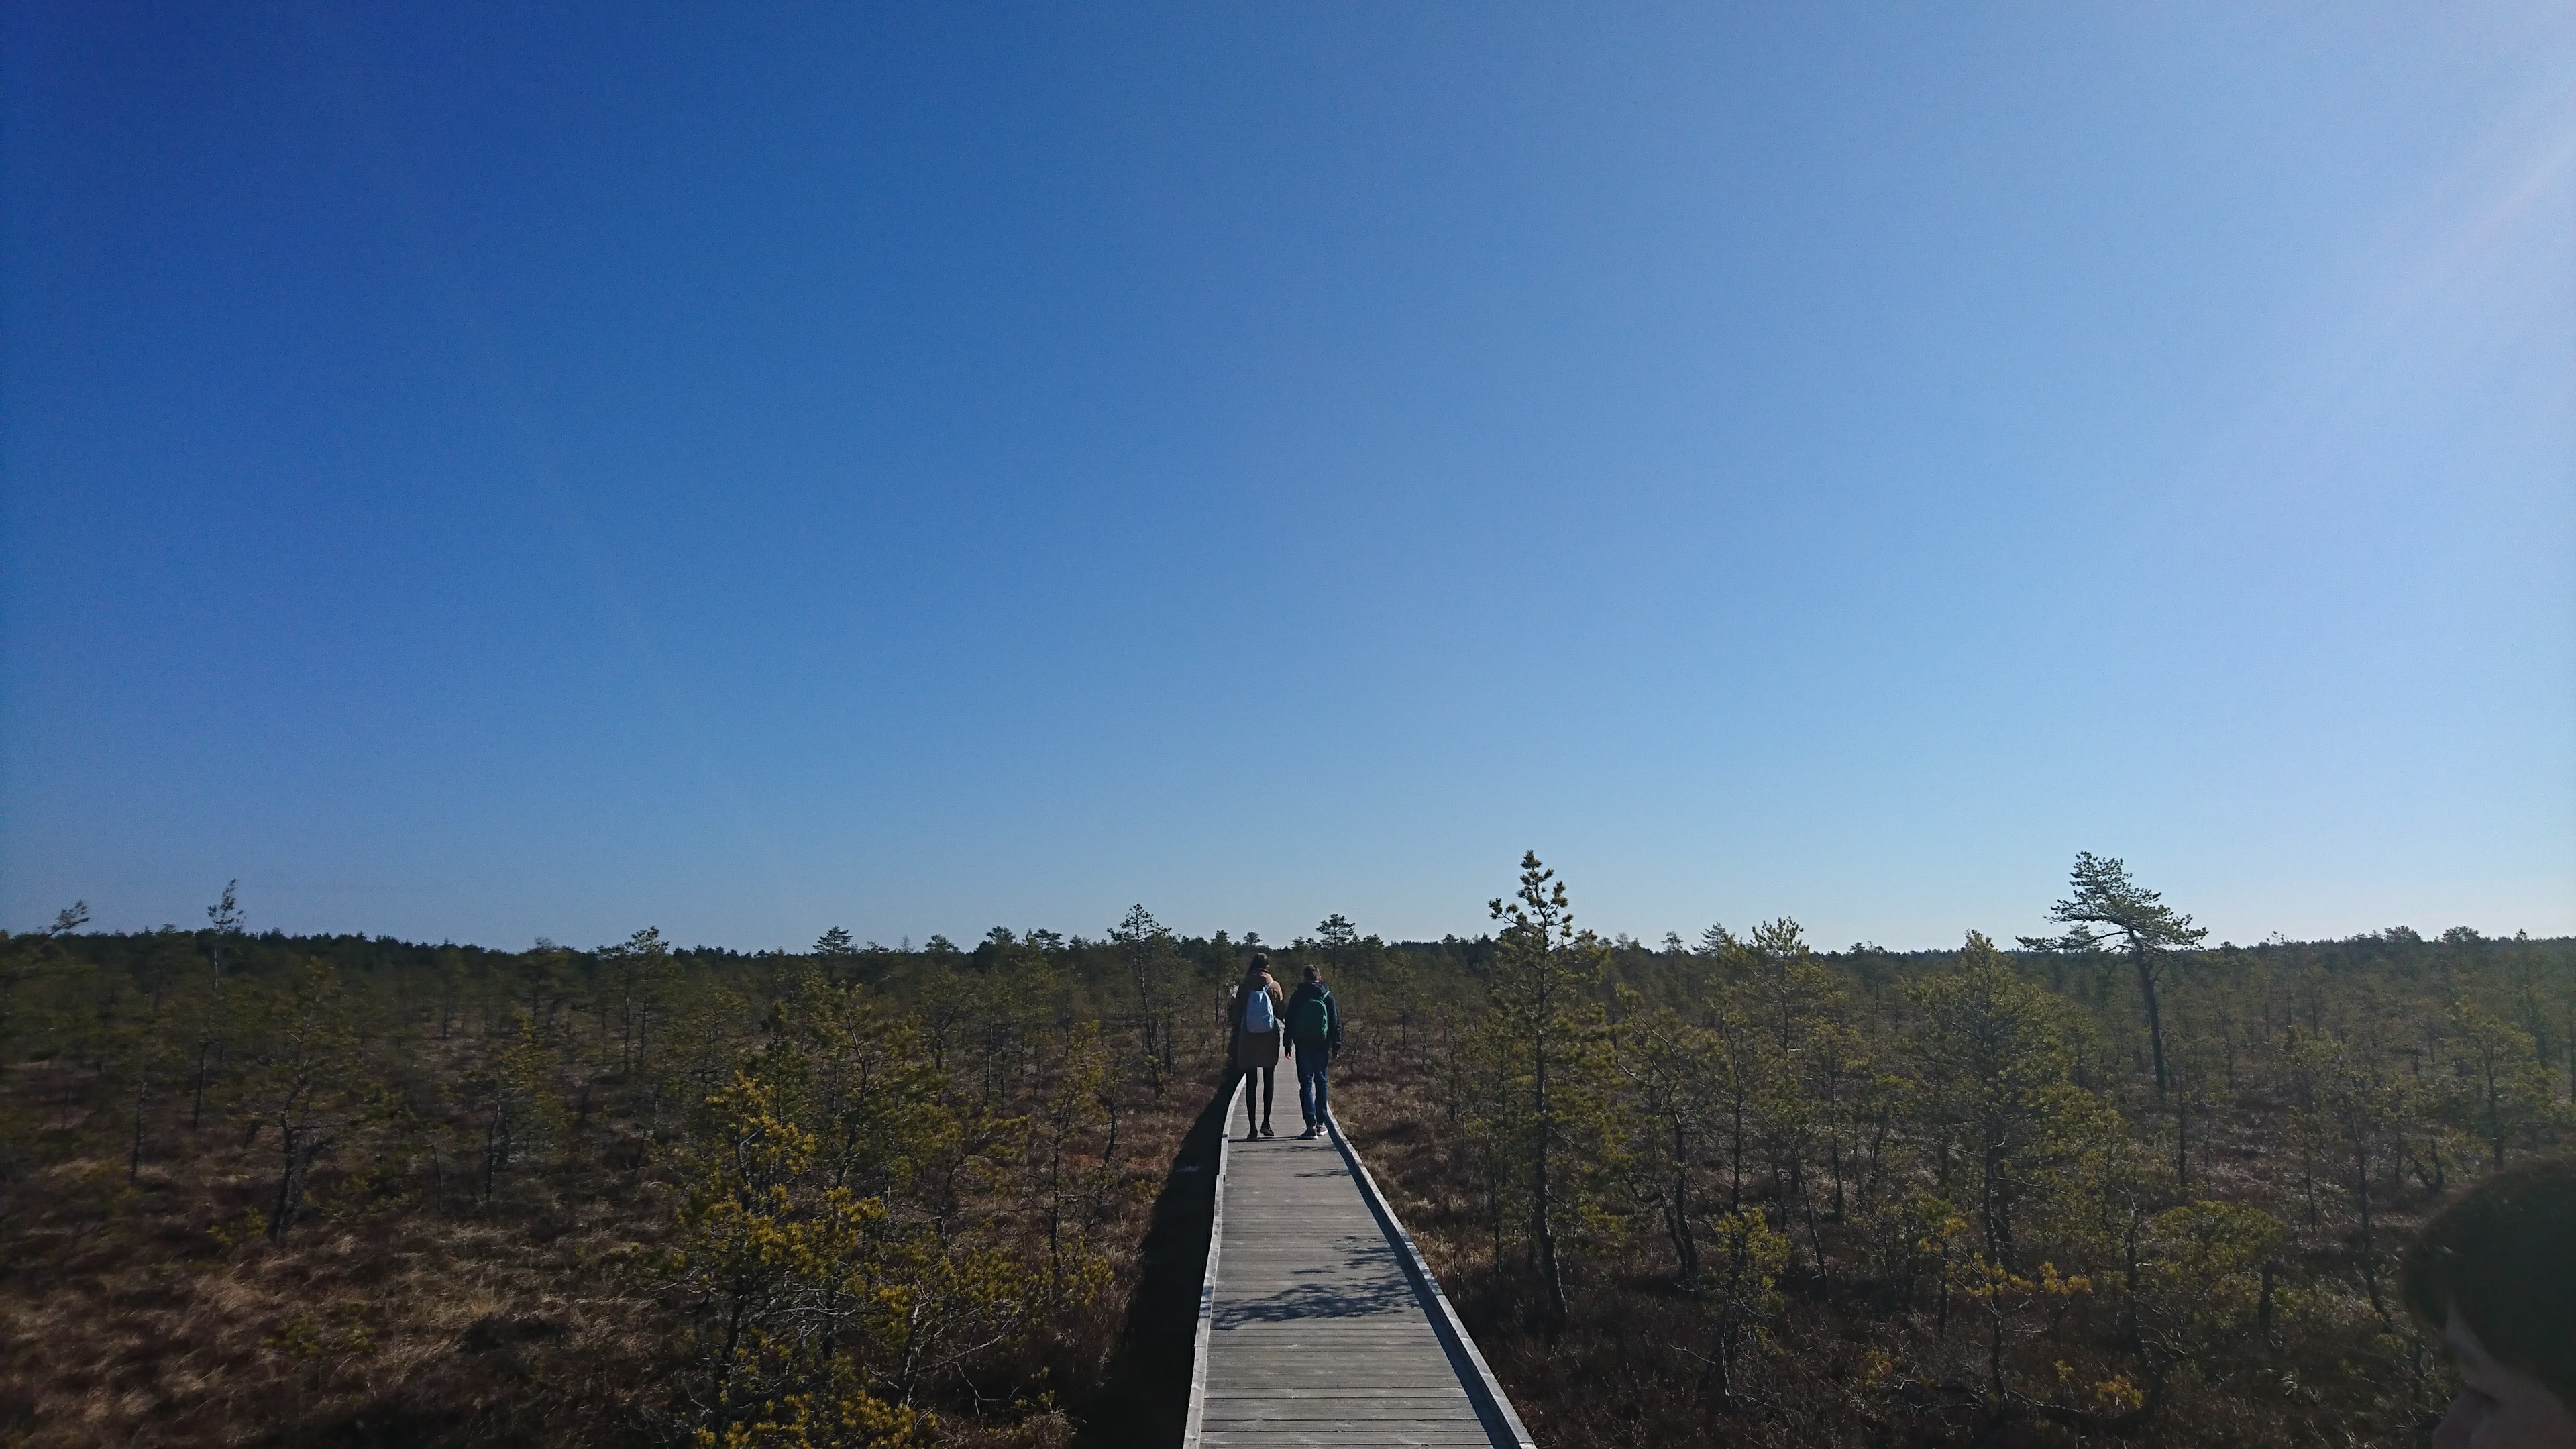 Viru Bogwalk in Lahemaa National Park